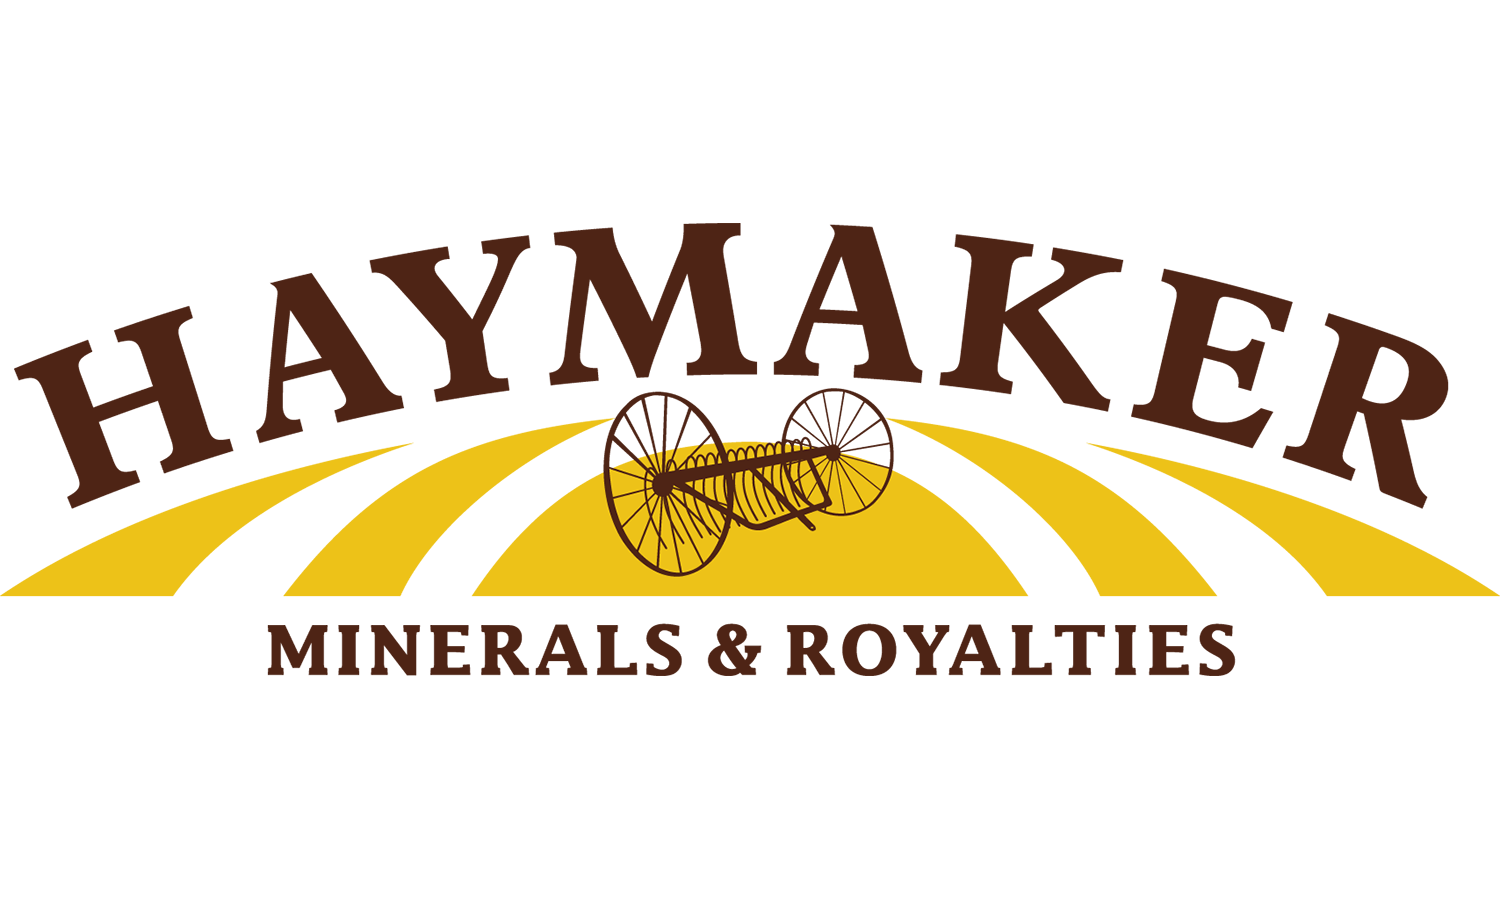 Haymaker Minerals & Royalties